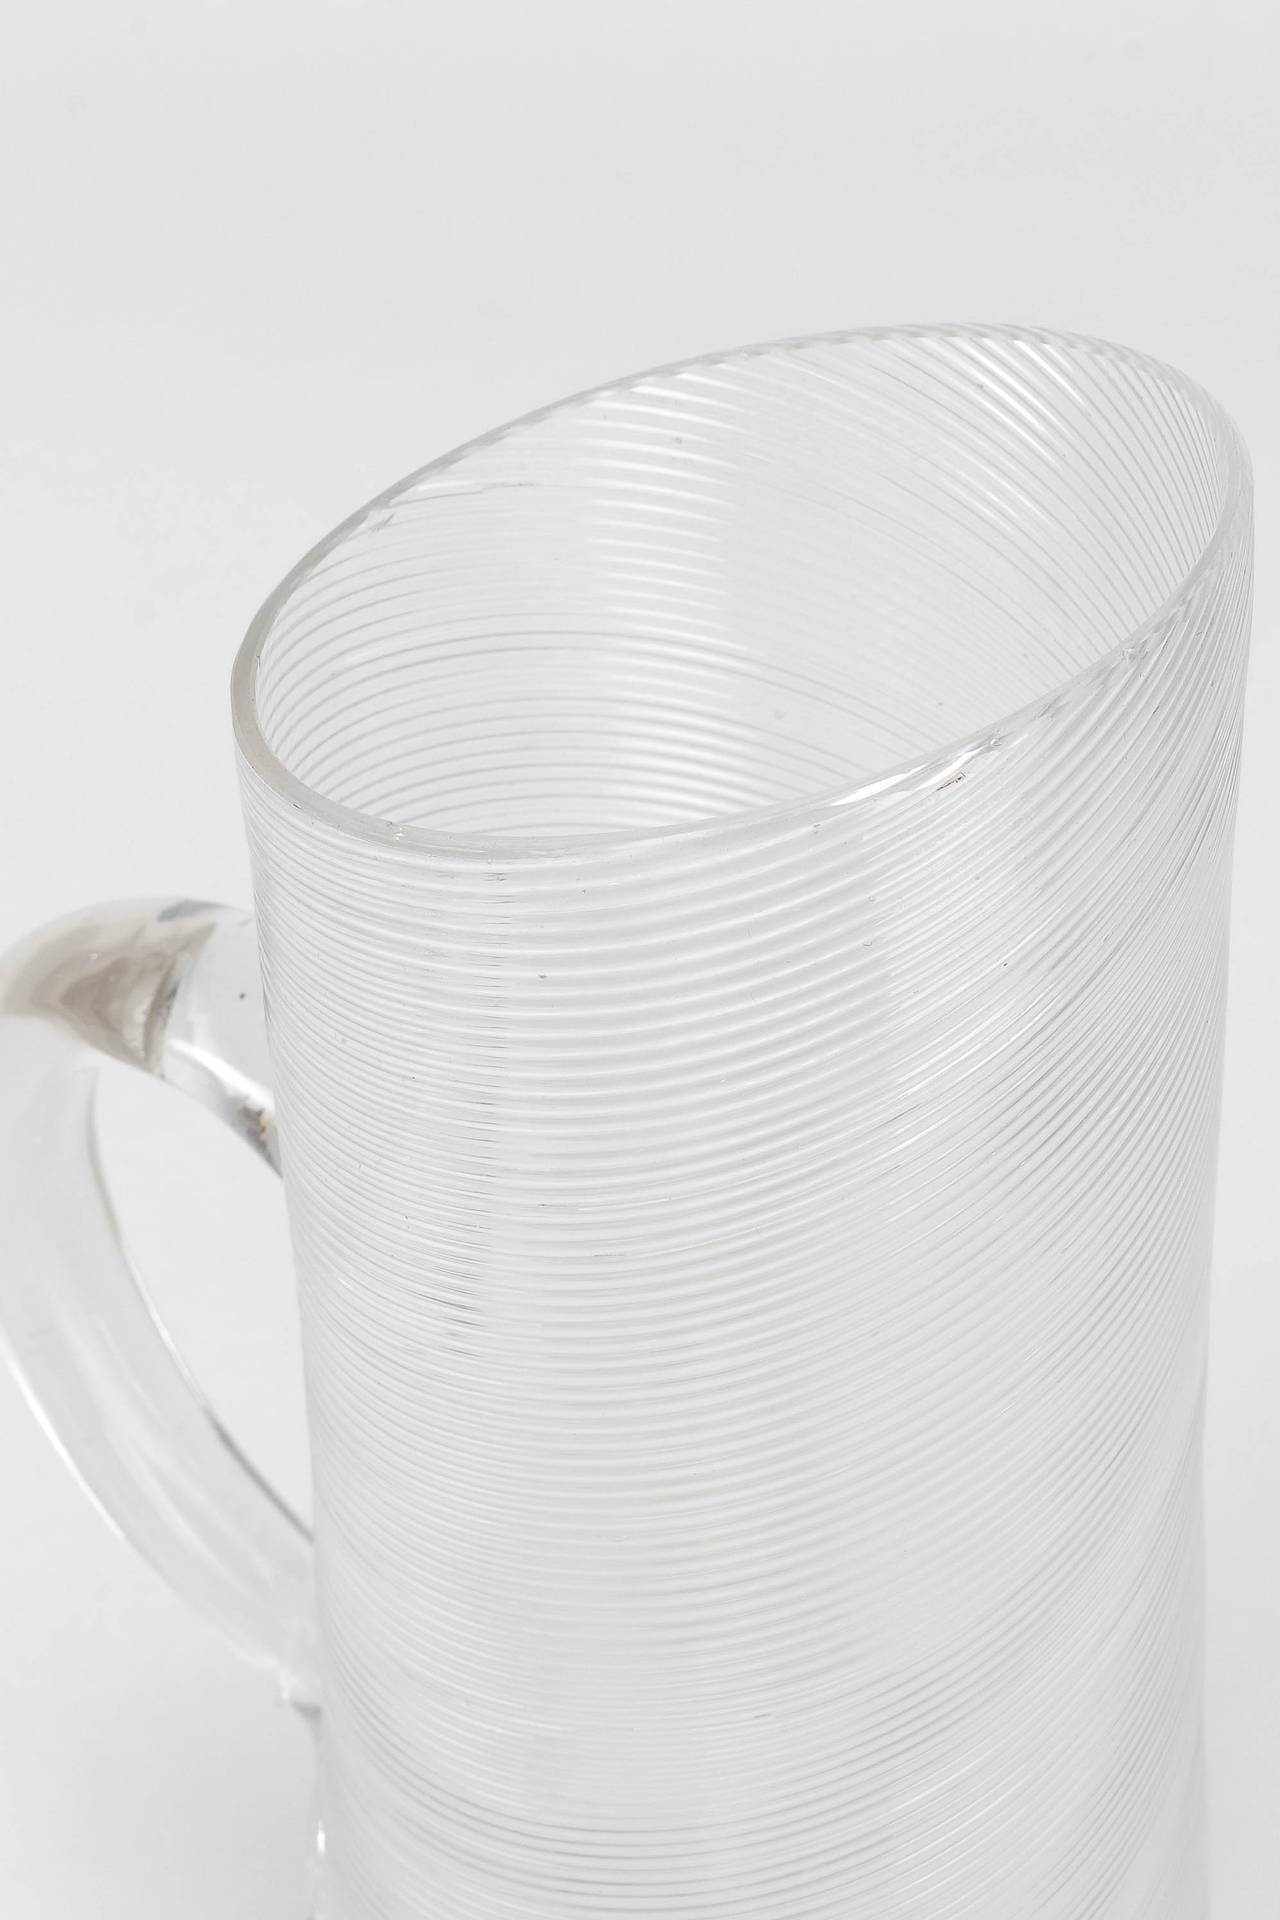 Italian Venini Filigrana Glass Decanter Jar, 1930s In Good Condition For Sale In Basel, CH